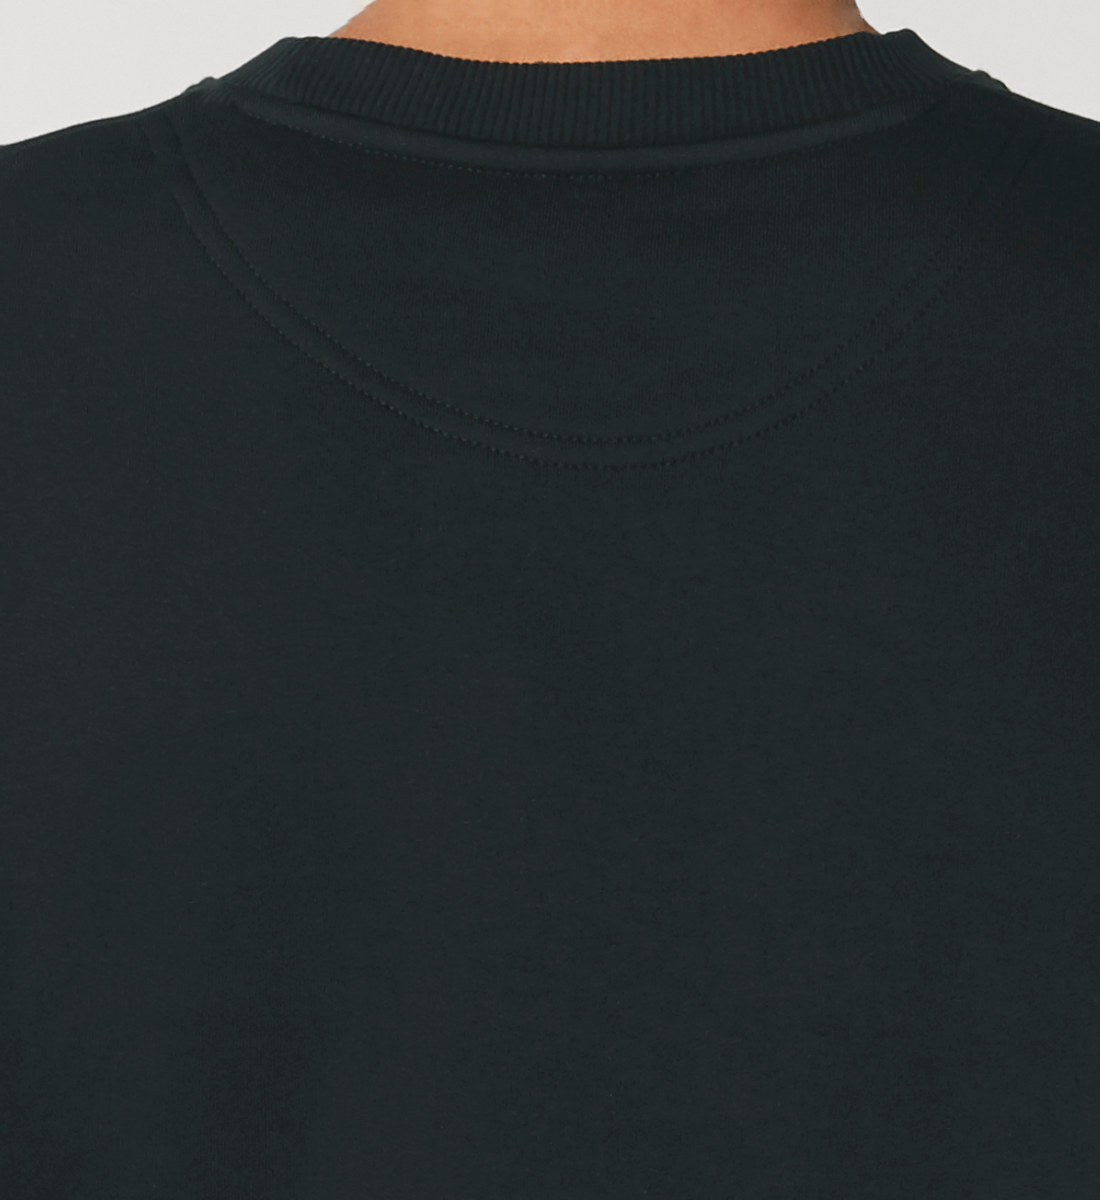 Schwarzes Sweatshirt Unisex Relaxed Fit mit Print Design aus der Kollektion Yoga Lotus von Roger rockawoo Clothing